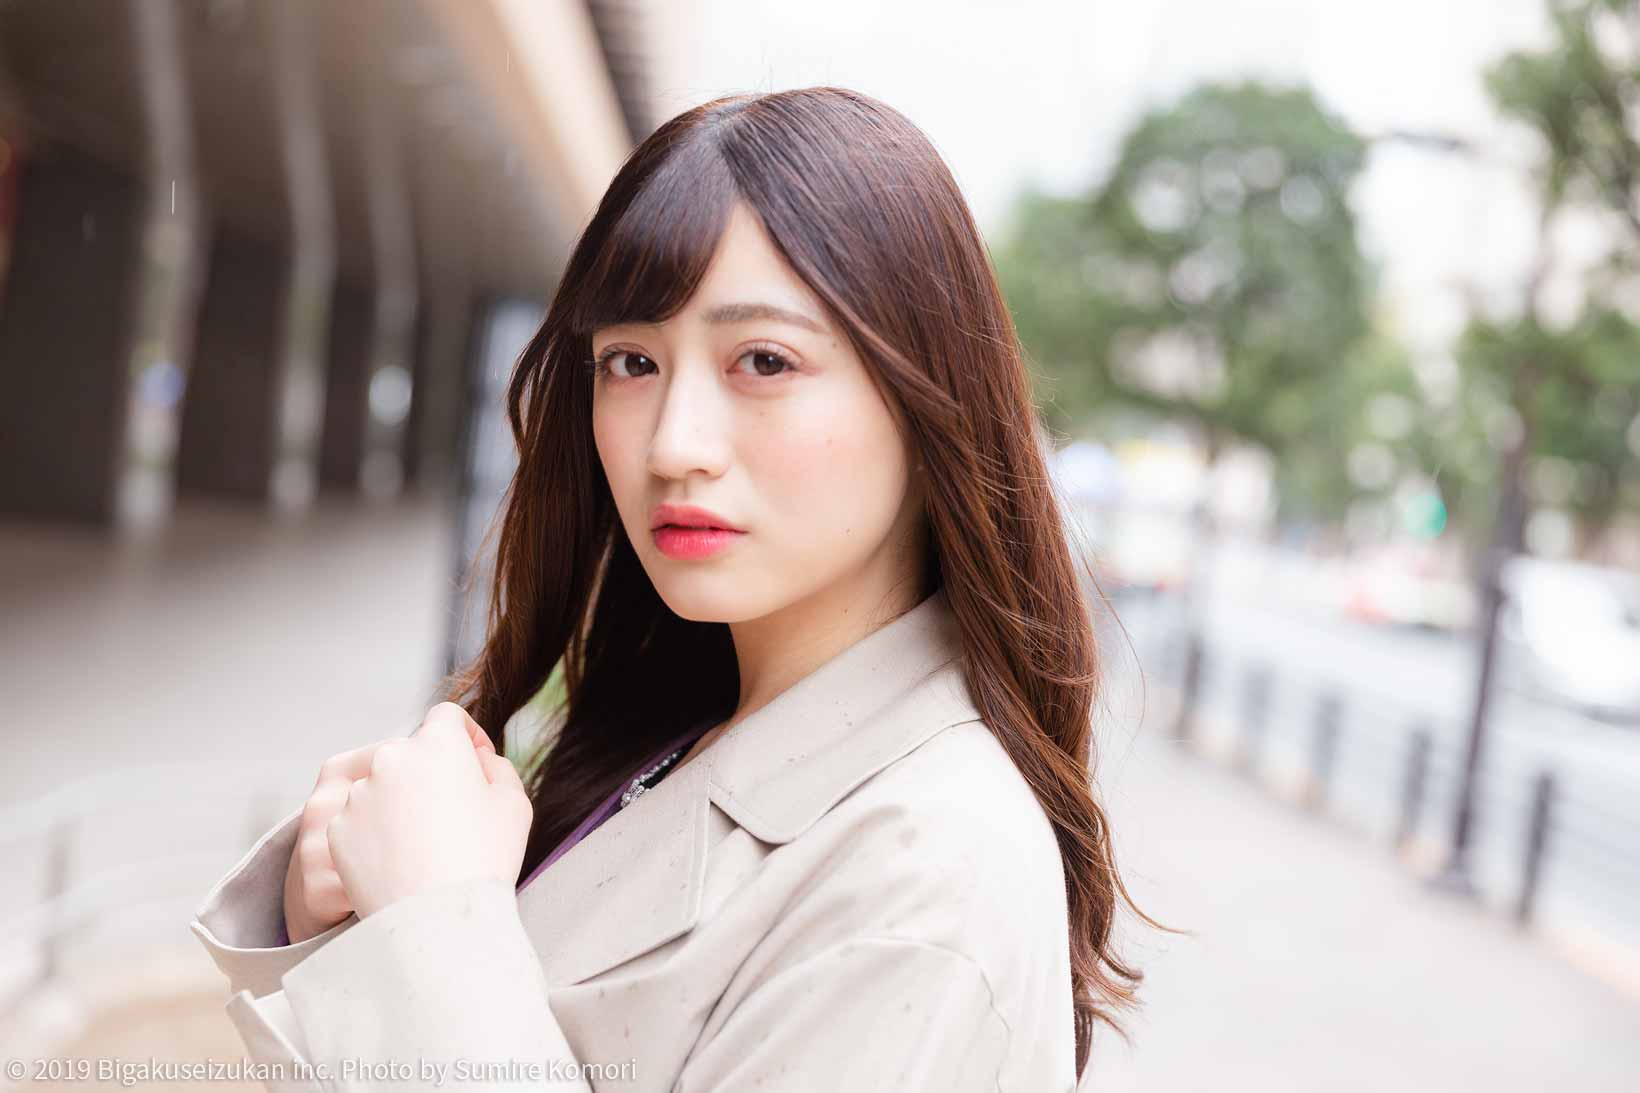 中村莉子 清泉女子大学 ノンノの読者モデルに挑戦中 幅広二重がチャームポイントの美女 美学生図鑑